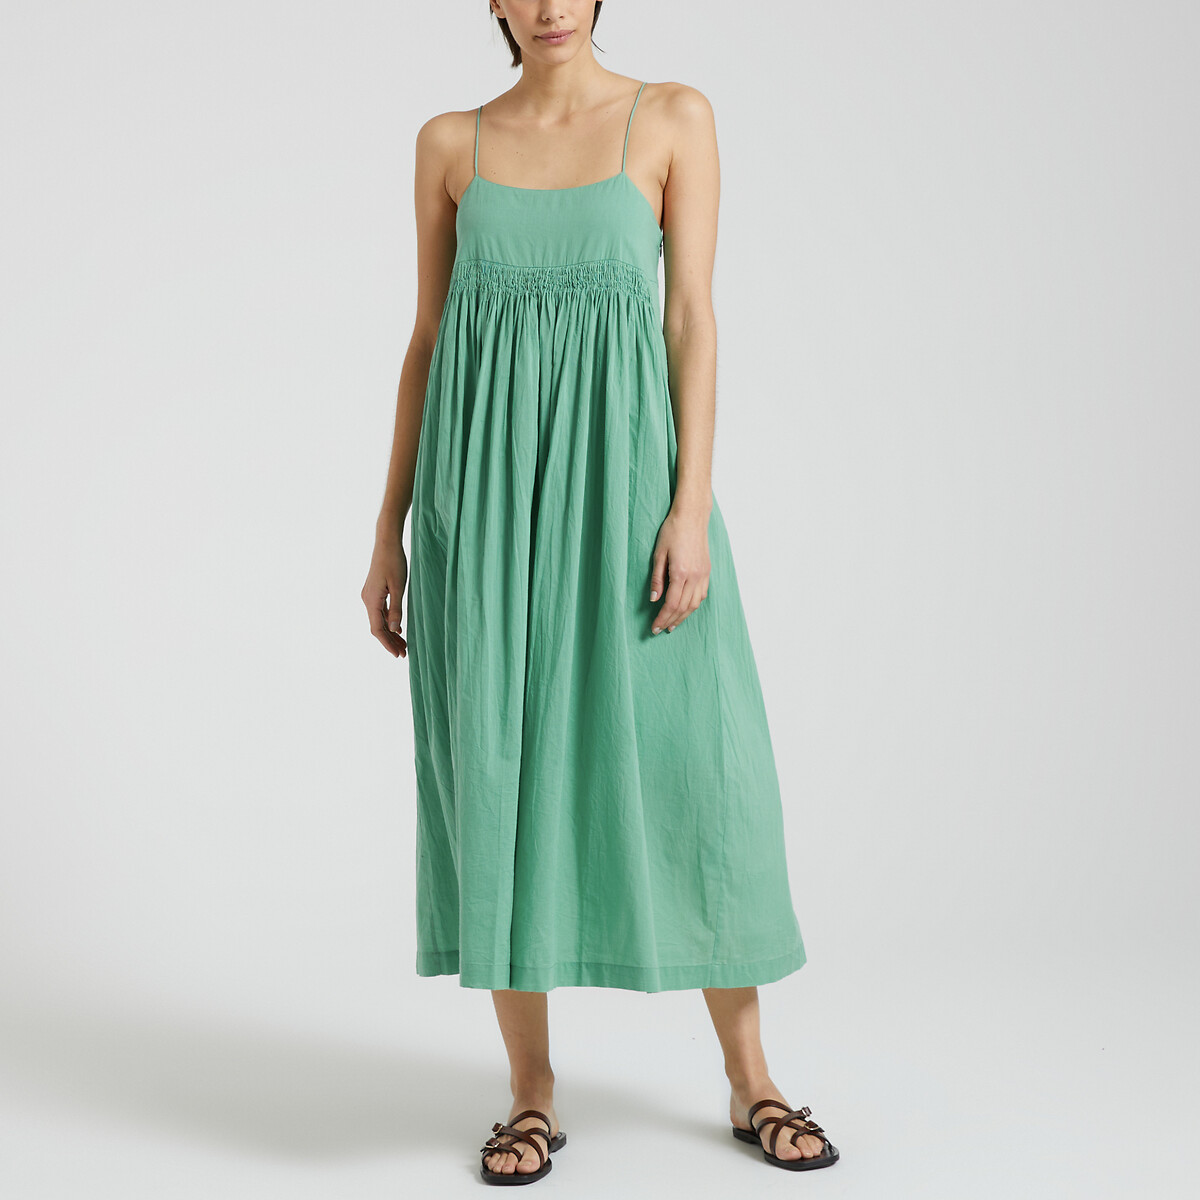 Платье длинное на тонких бретелях RAPTOR PLAIN L зеленый платье длинное с плиссировкой принт в горошек 42 бежевый